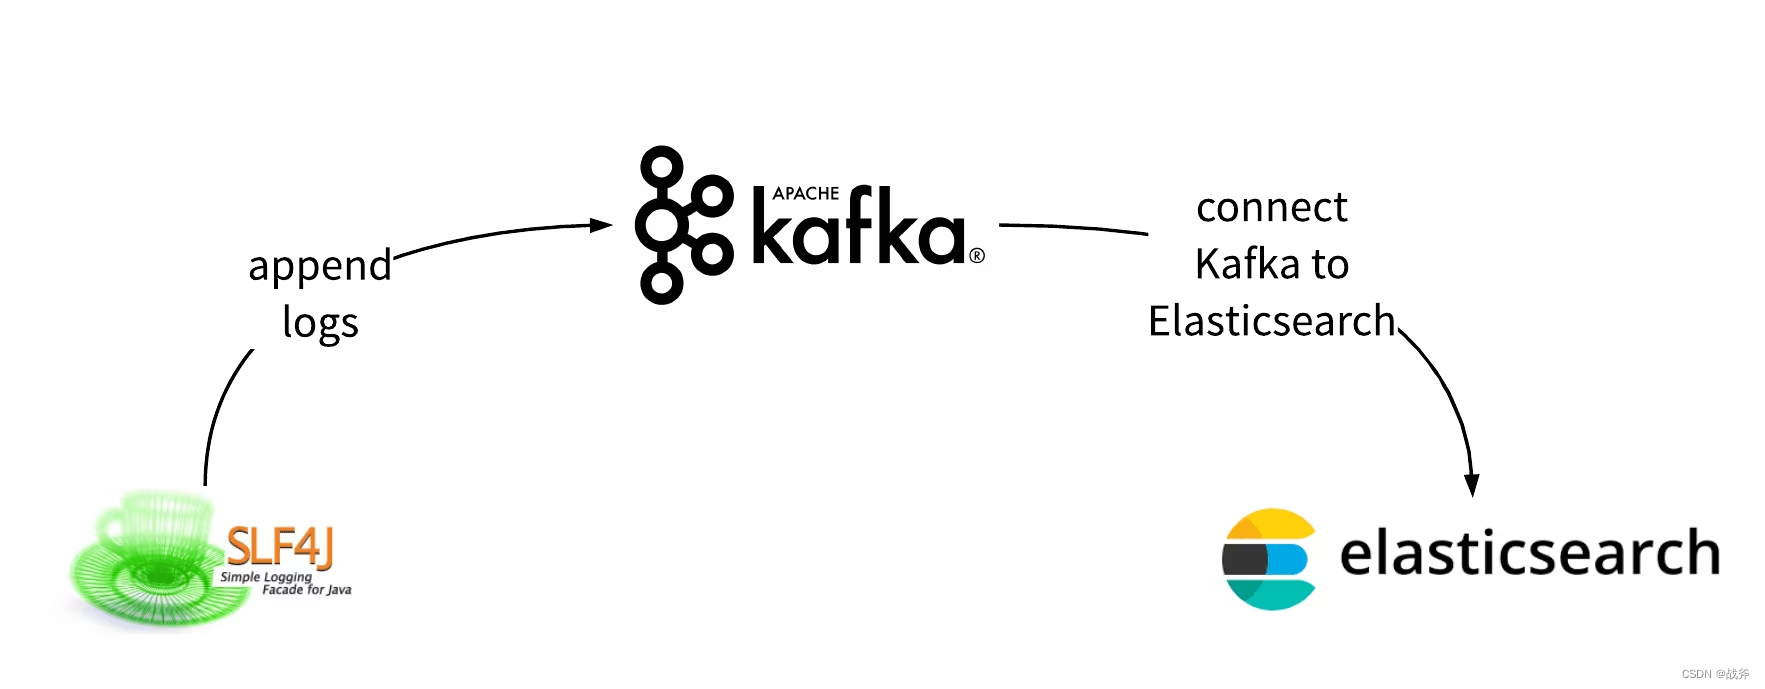 架构必备能力——kafka的选型对比及应用场景